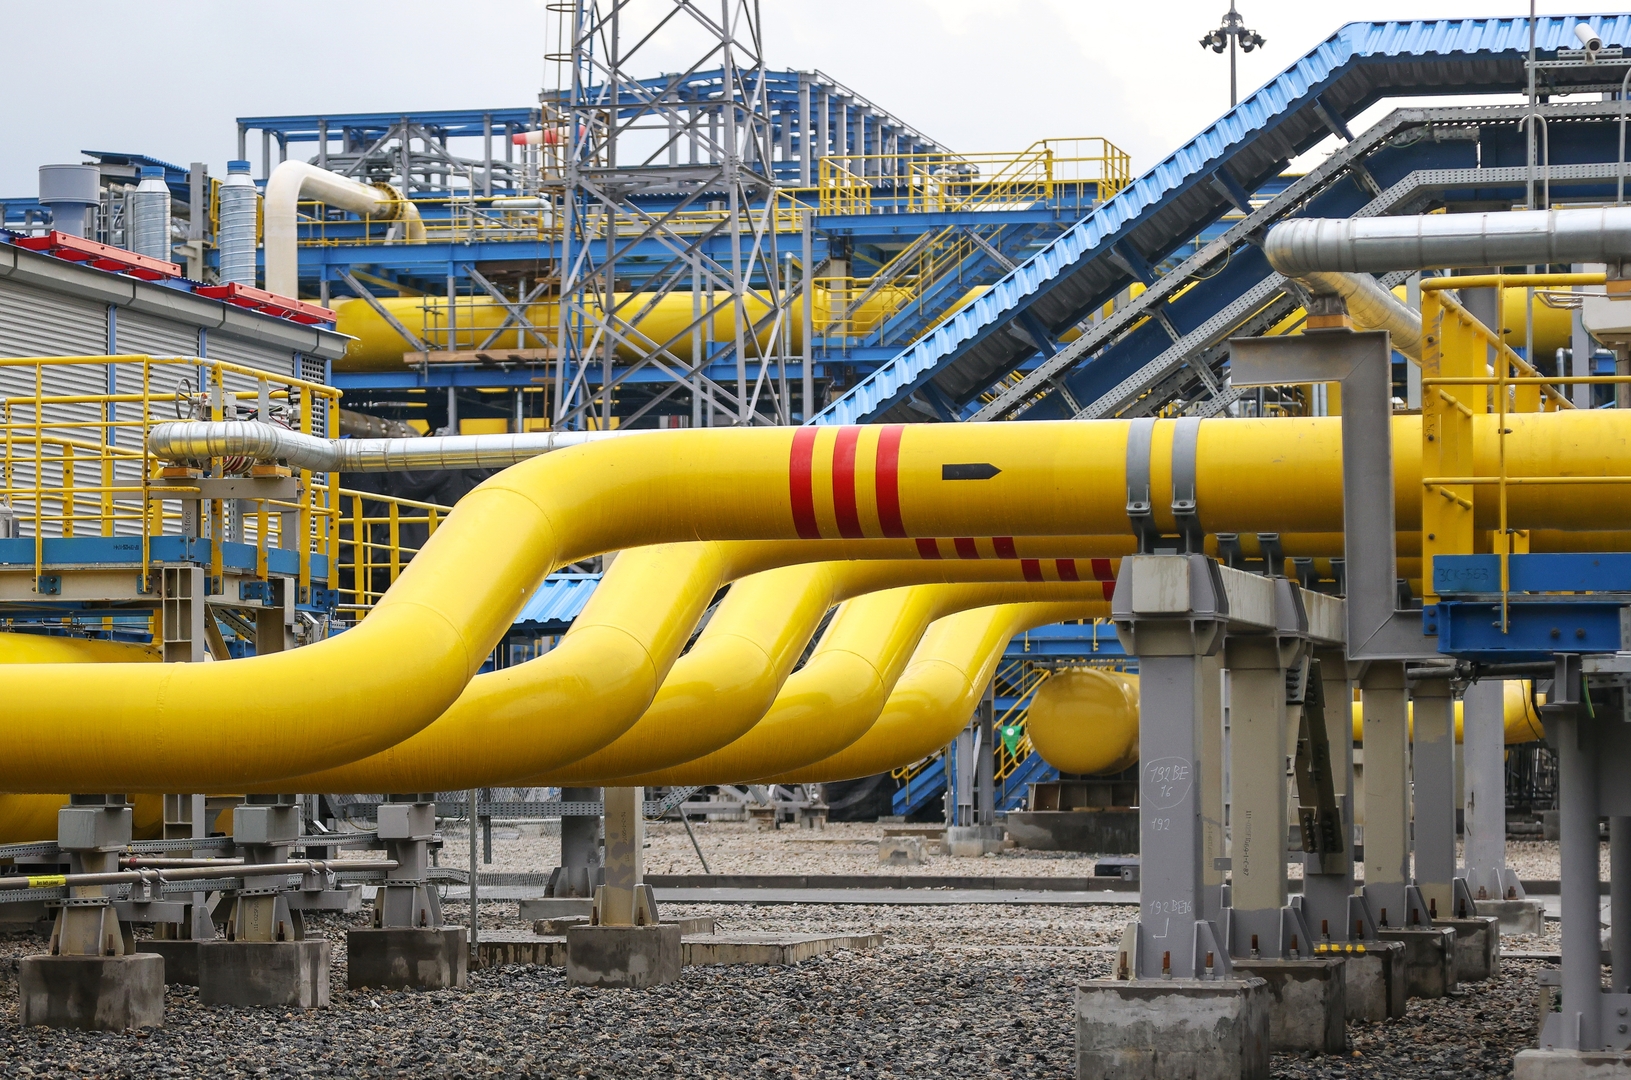 نوفاك: نواصل زيادة صادرات الغاز الروسي إلى أسواق جديدة ونطور مسارين جديدين إلى الصين